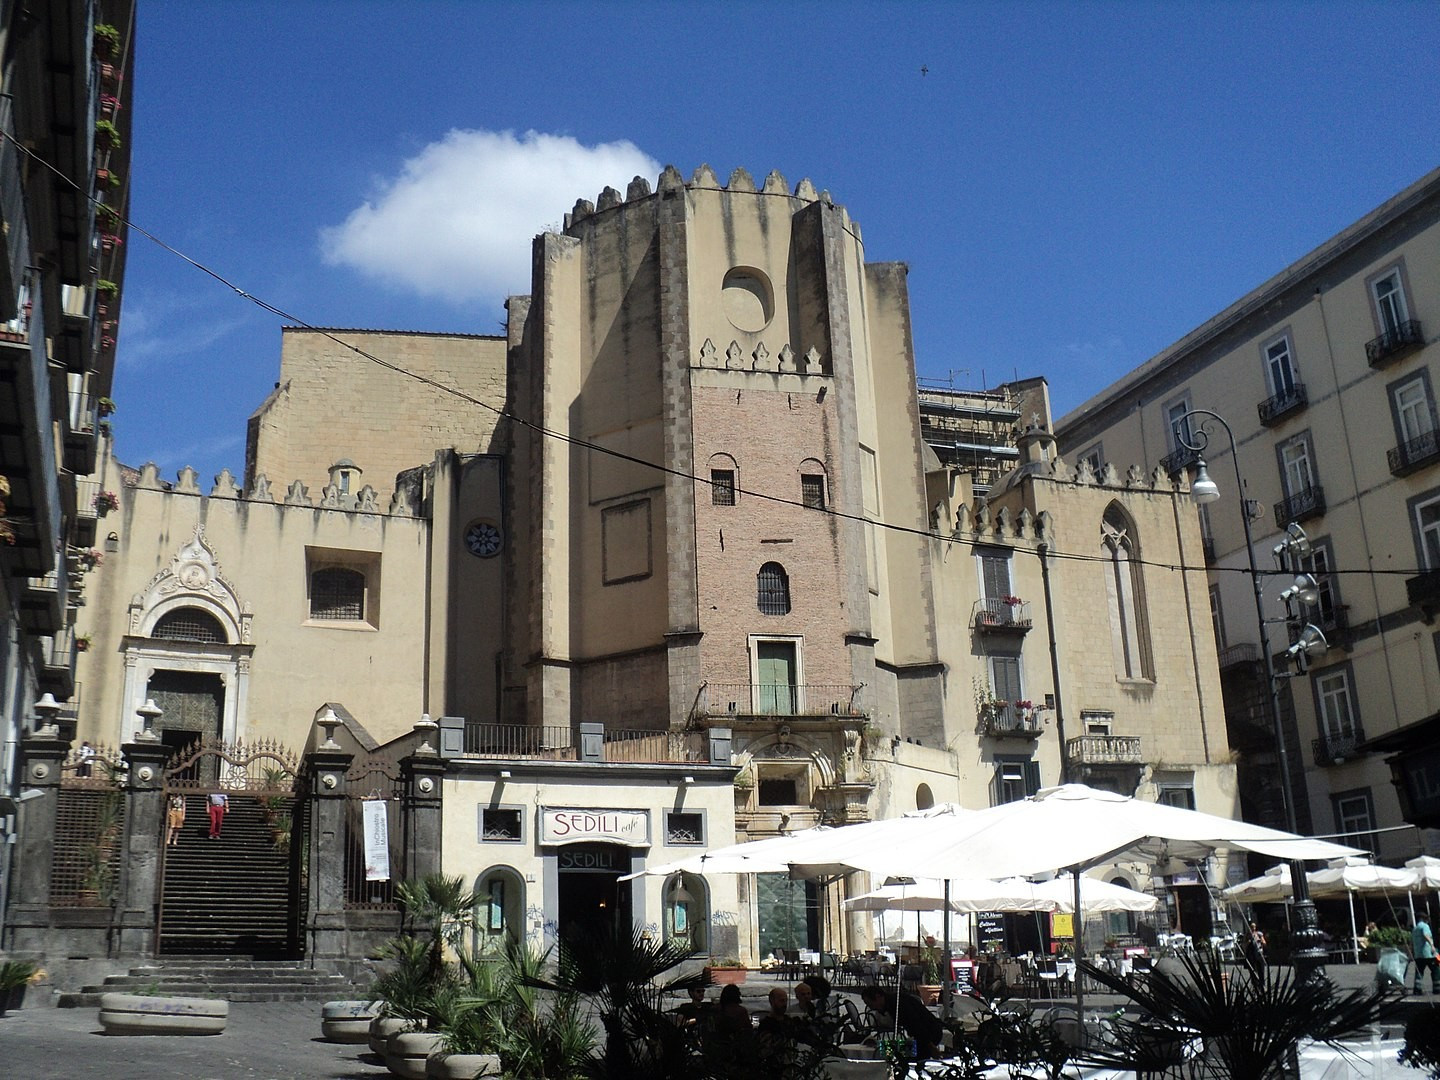 San Domenico Maggiore, Italy